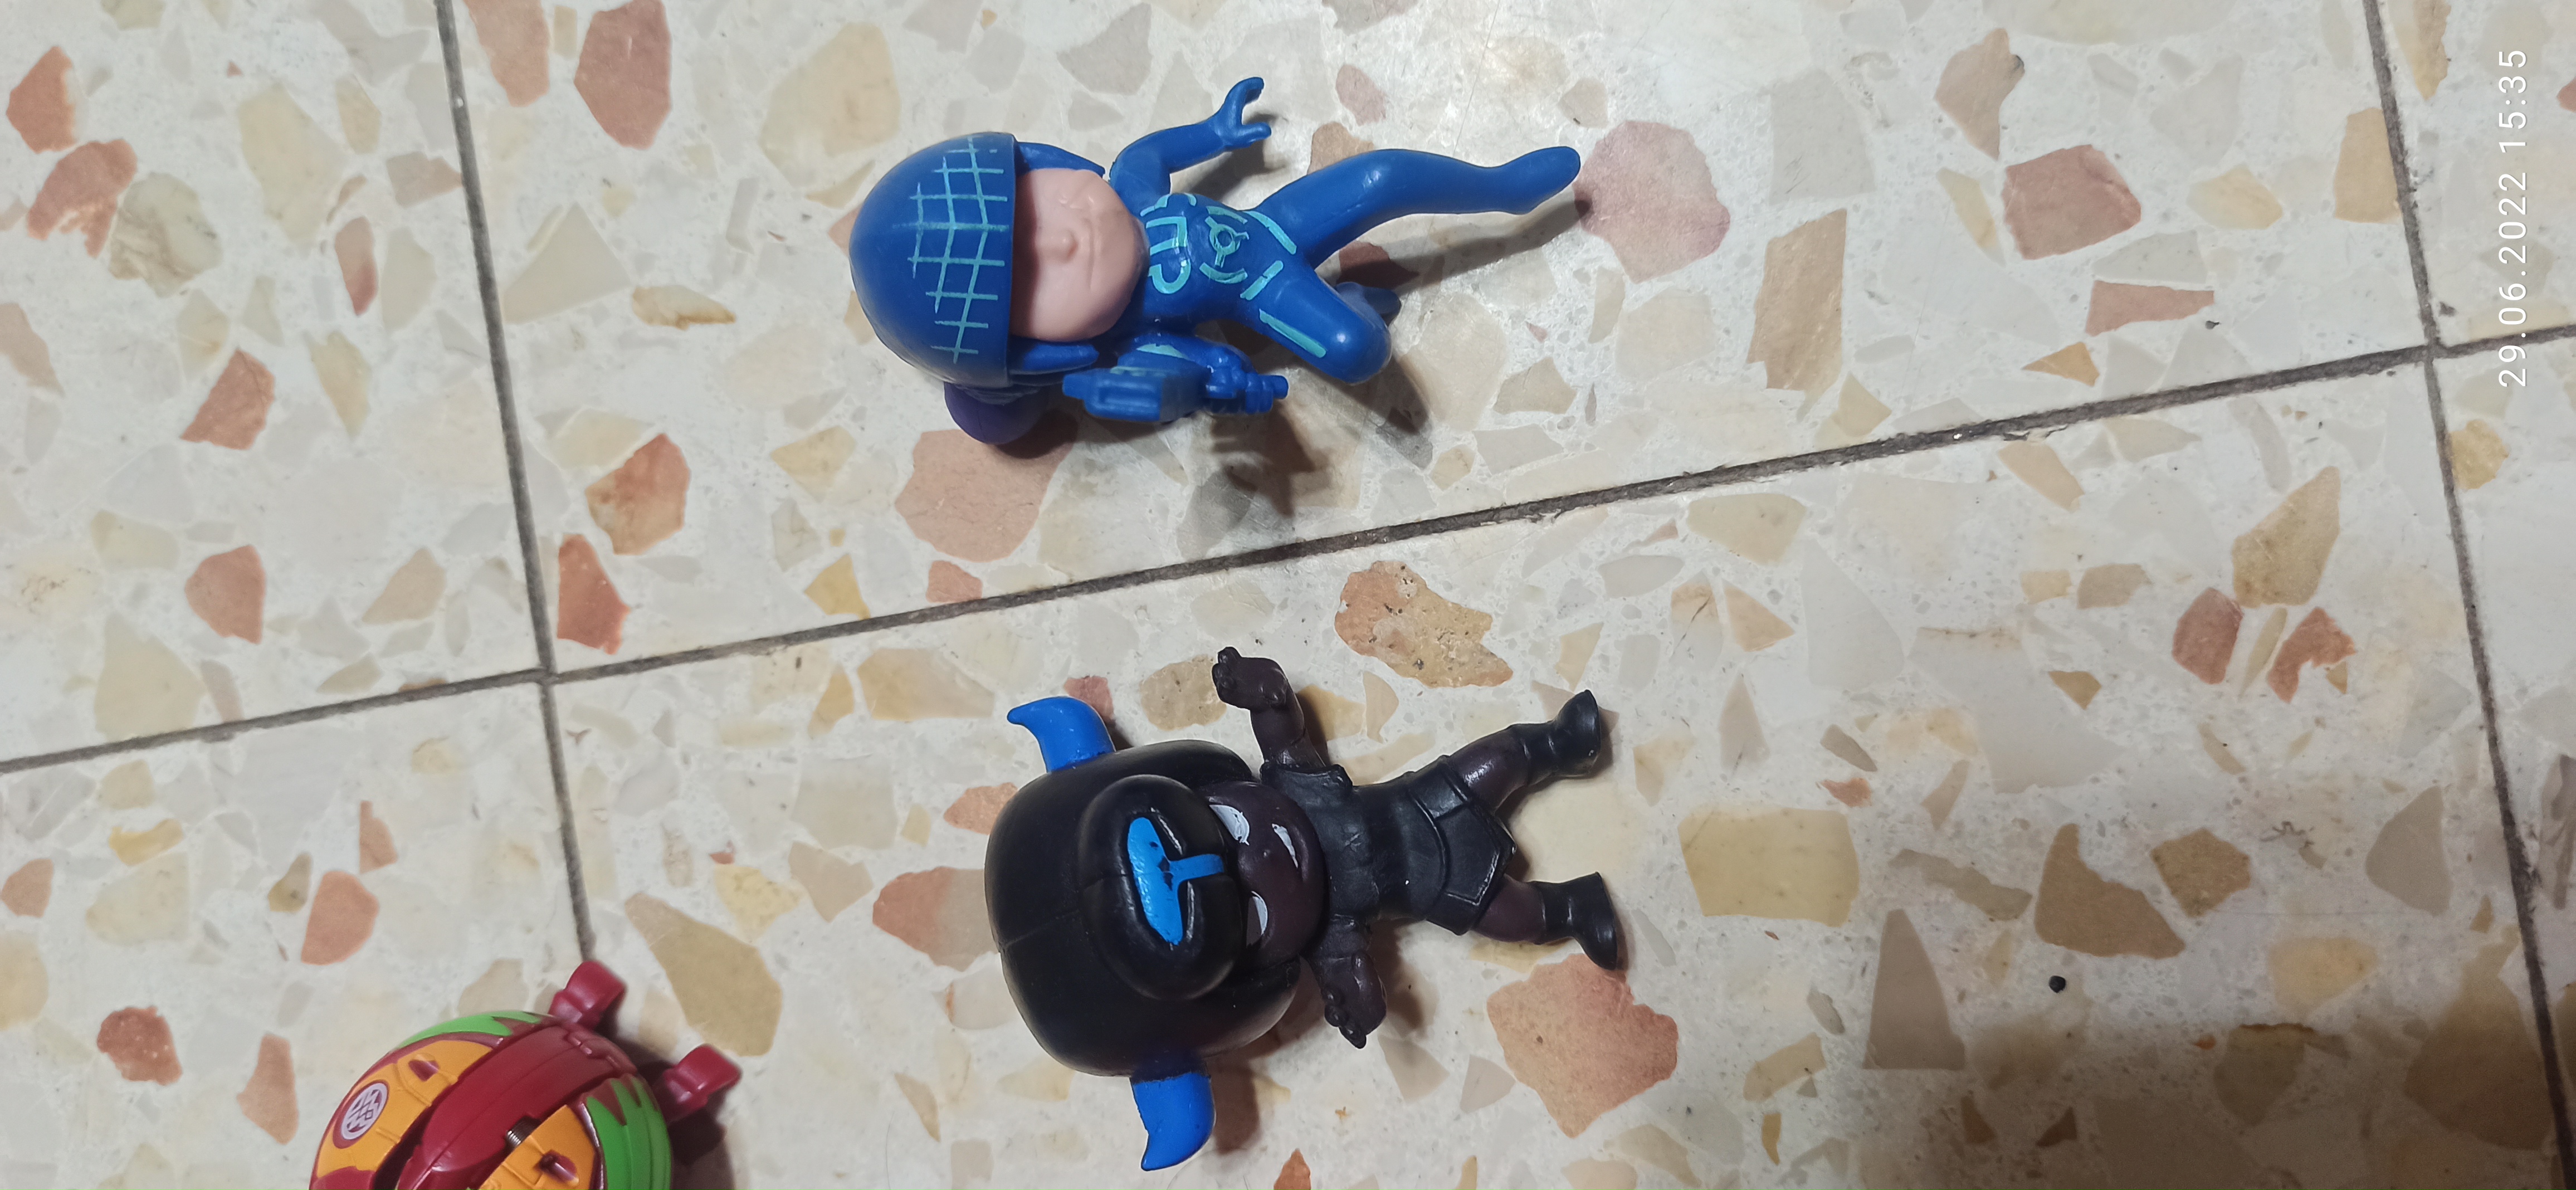 תמונה 3 ,4 דמויות 4 כדורים מתפרקים למכירה ביבנה לתינוק ולילד  משחקים וצעצועים